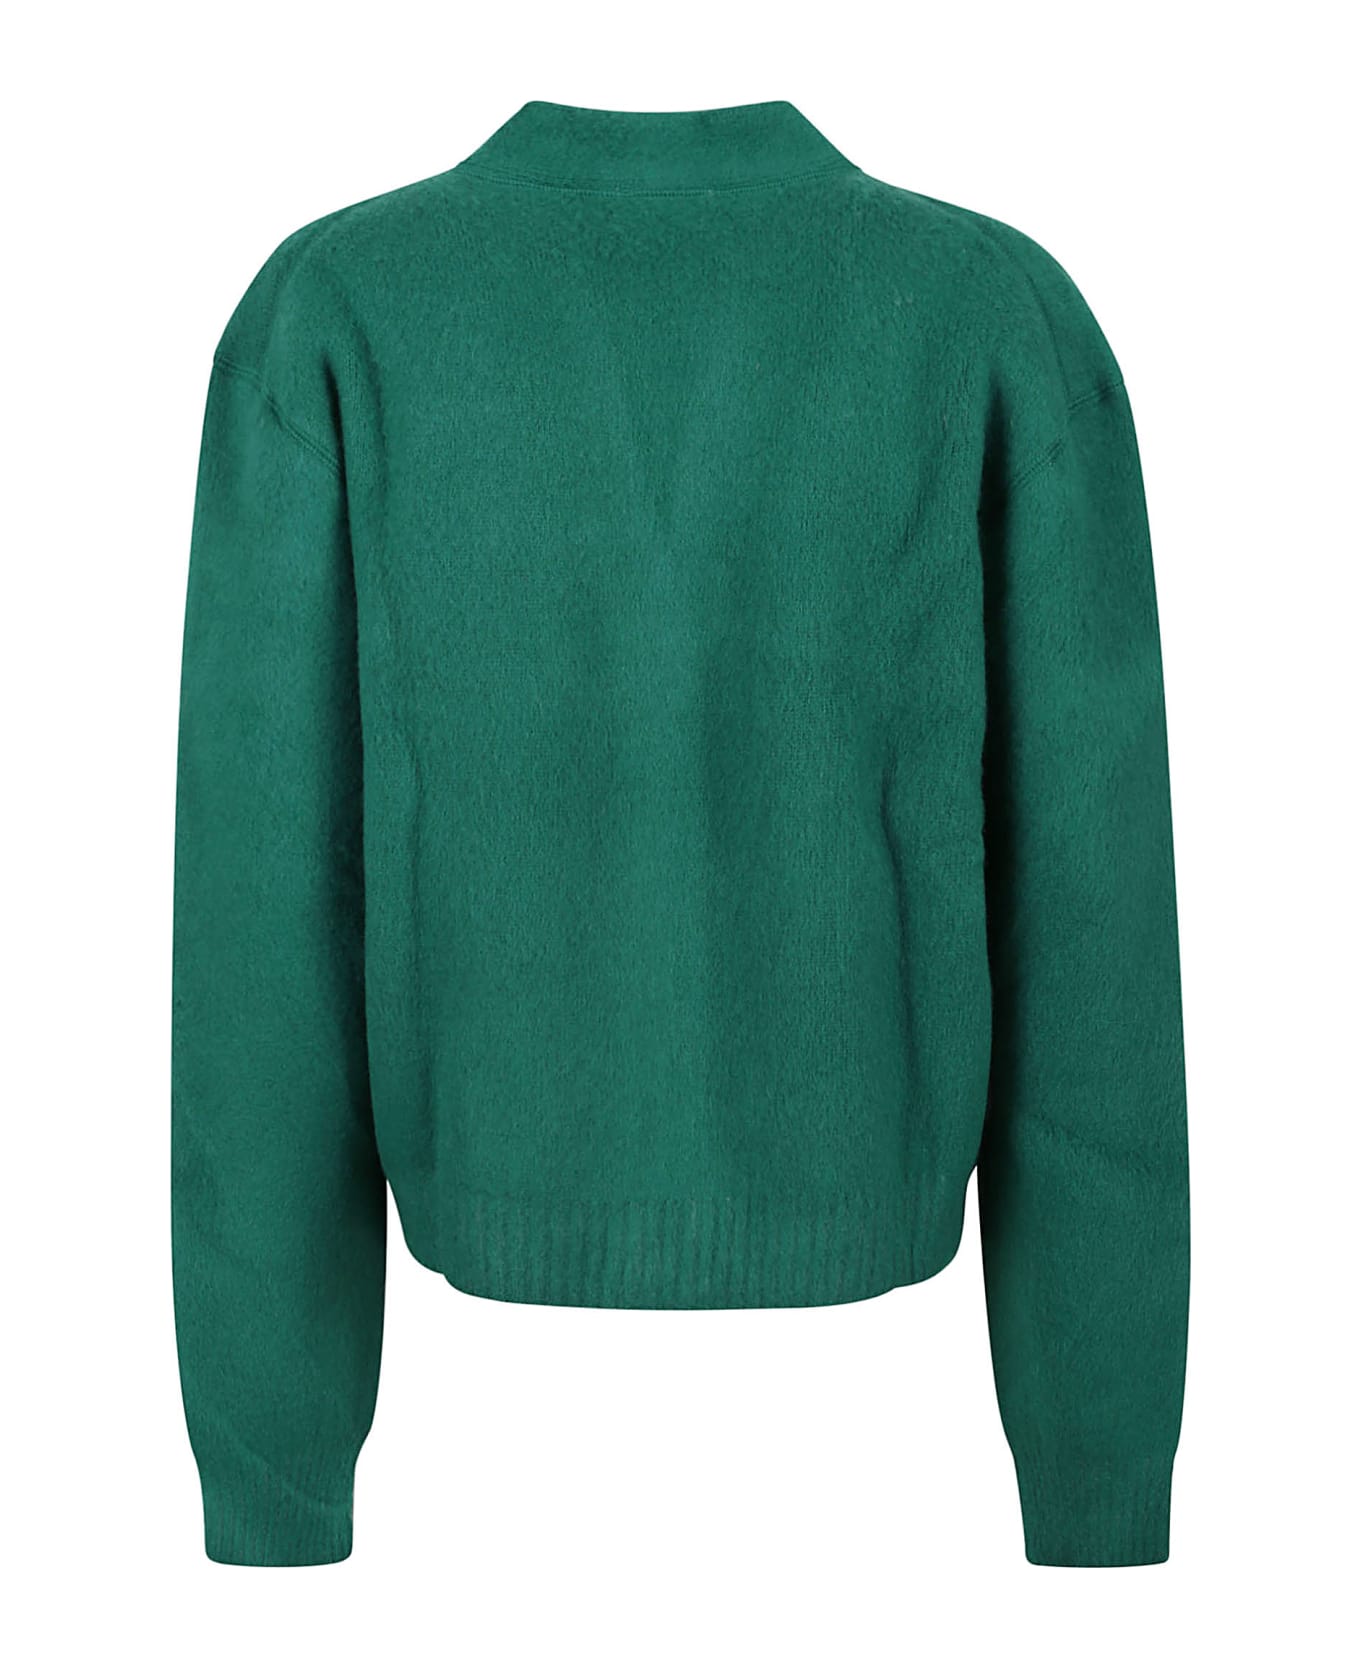 N.21 N°21 Sweaters Green - Green